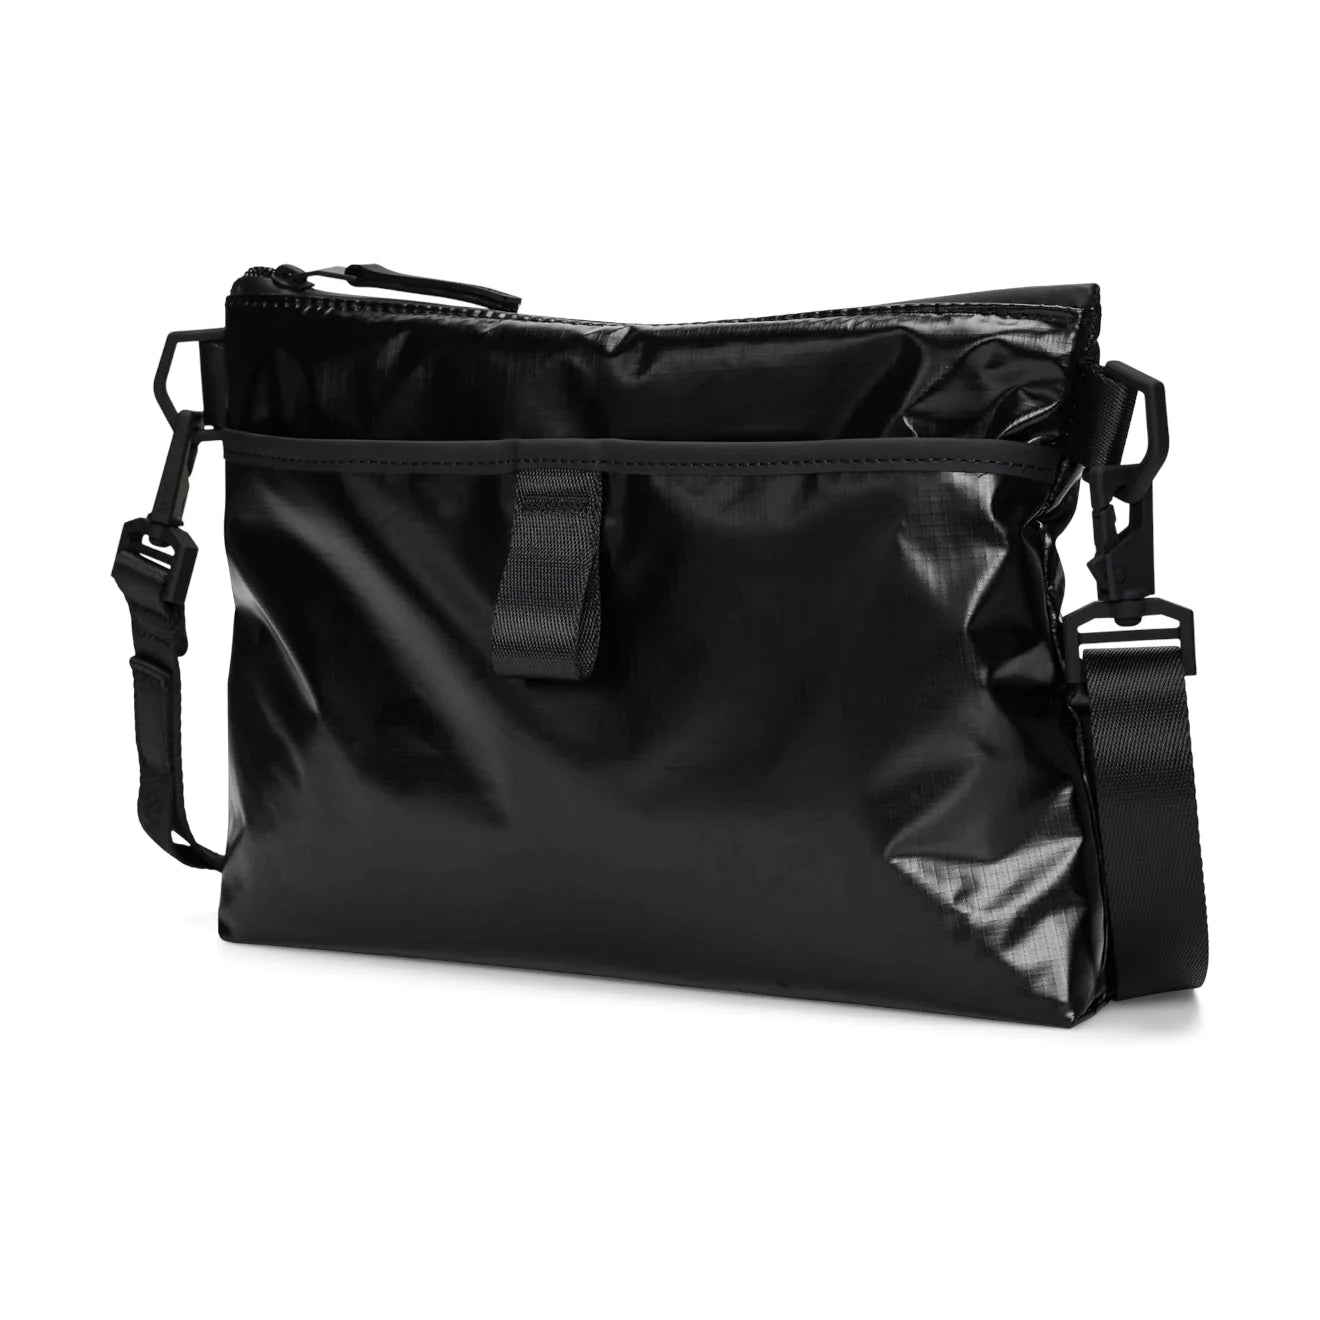 Sibu Musette Bag | Black | Waterproof | by Rains - Lifestory